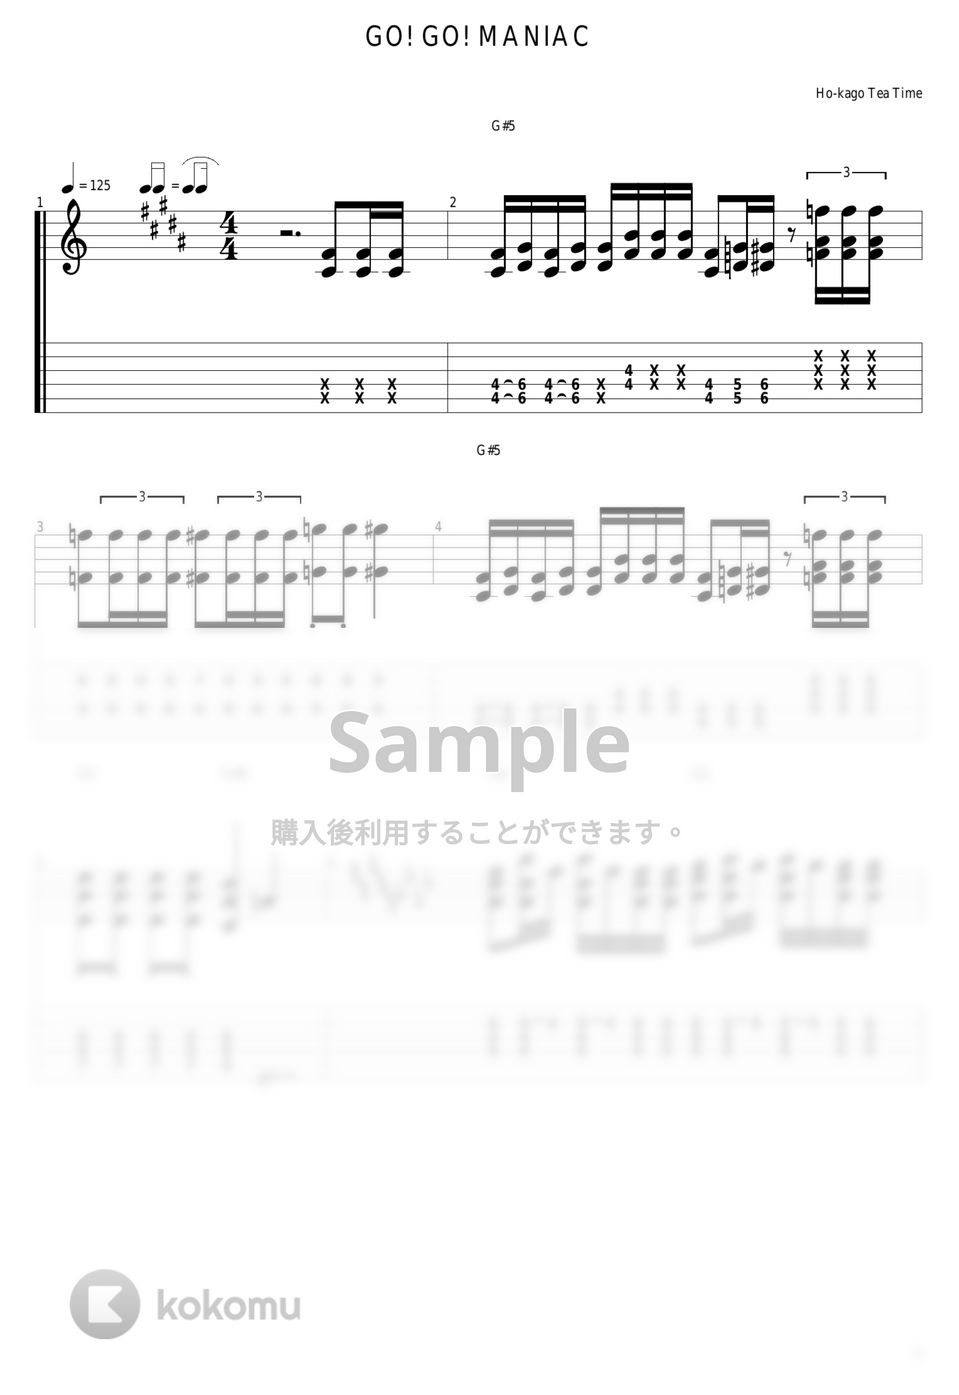 放課後ティータイム - GO!GO!MANIAC by guitar cover with tab